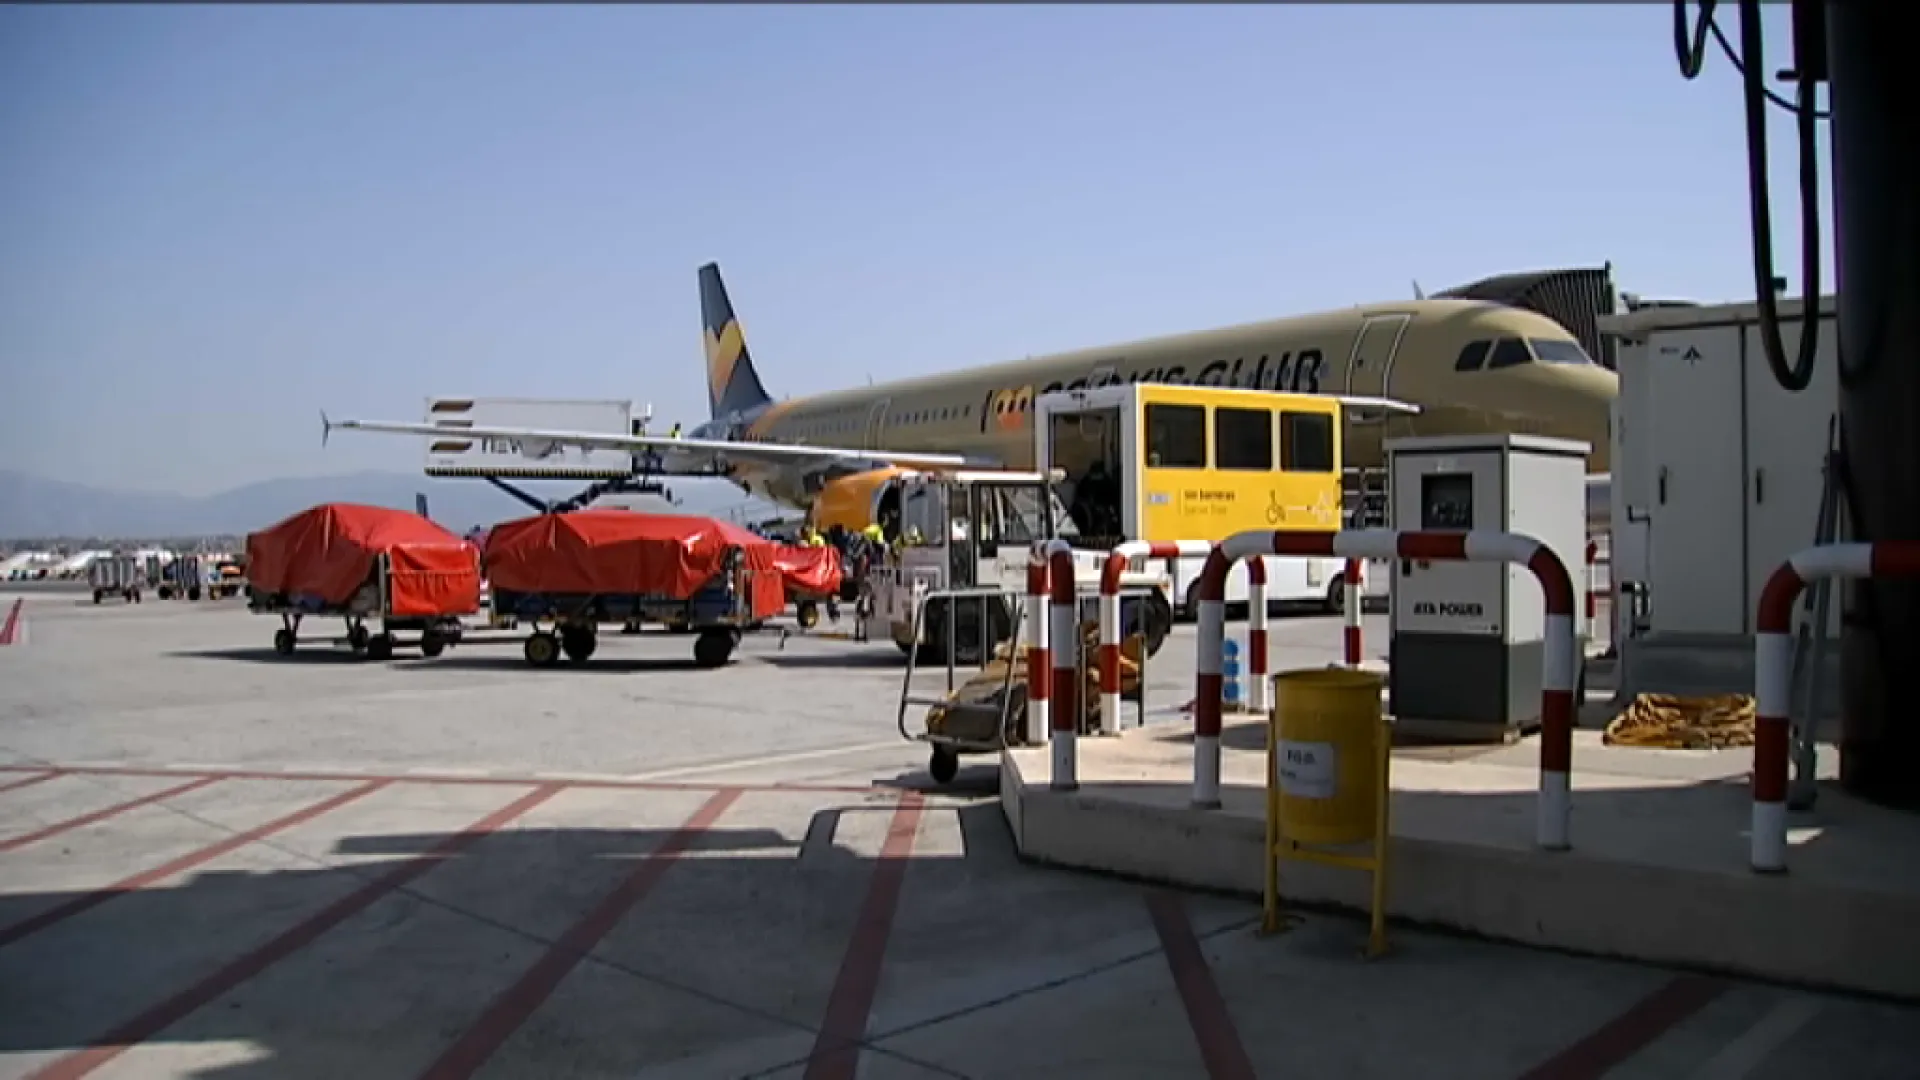 La vaga de handling per al cap de setmana de reis continua endavant a l’aeroport de Palma